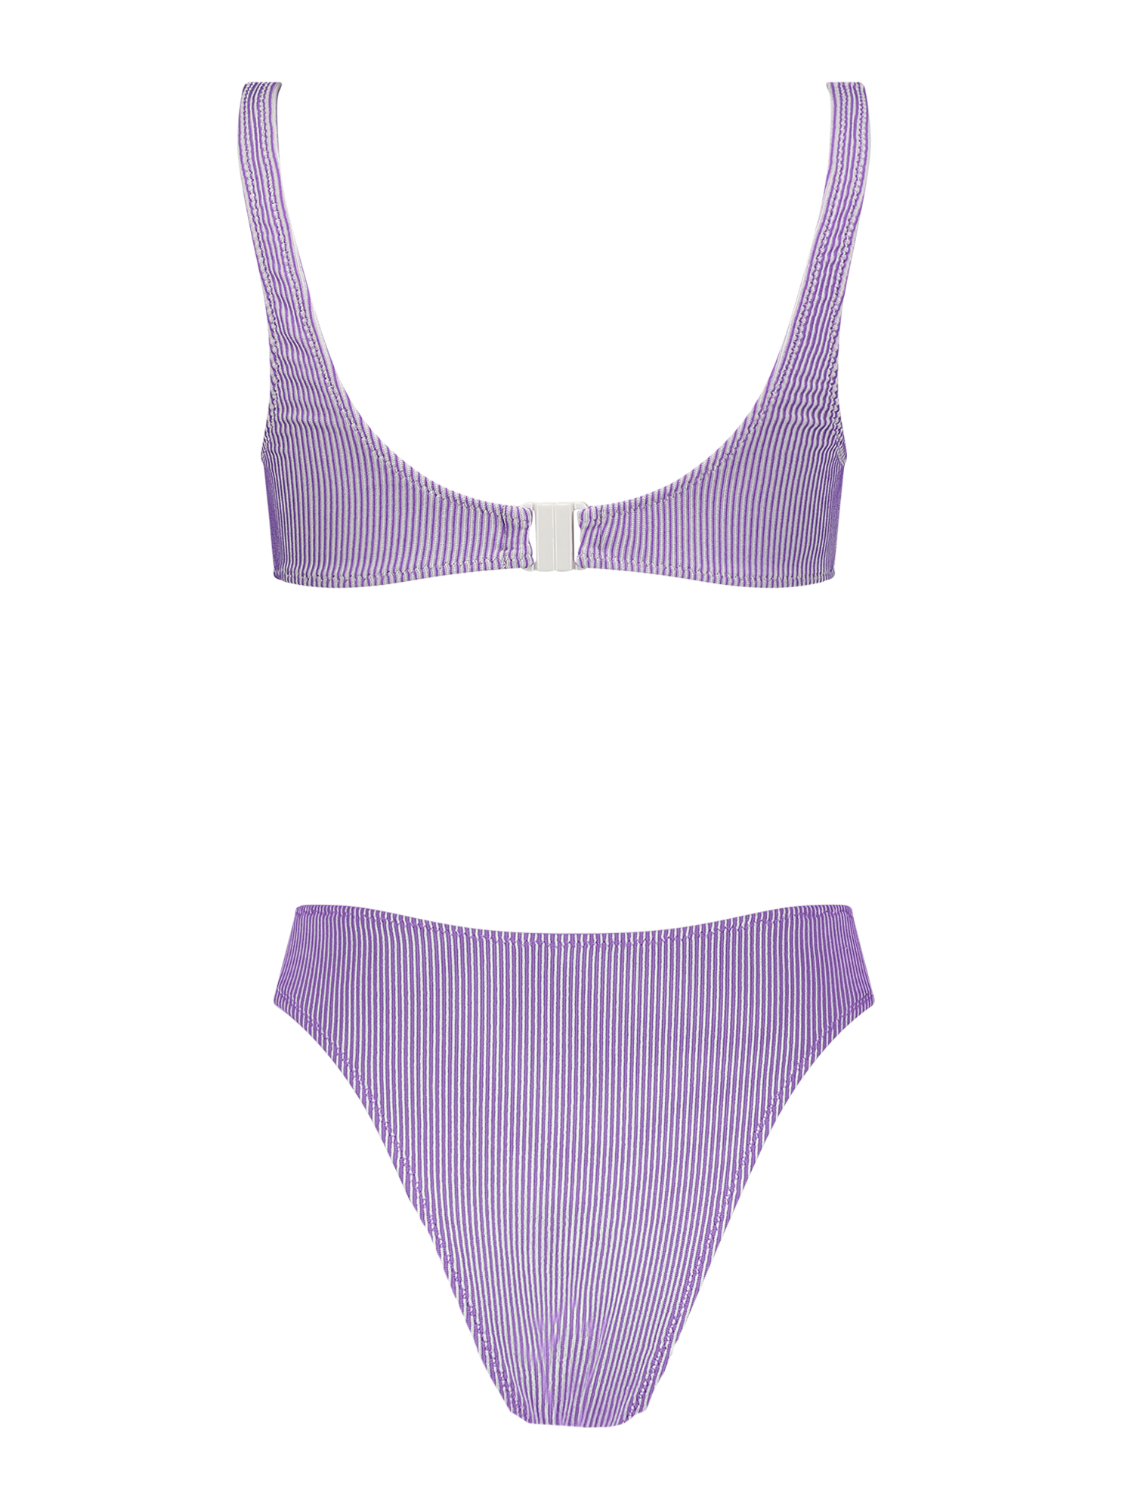 Anna Lavender Rib Knit High-Cut Bikini